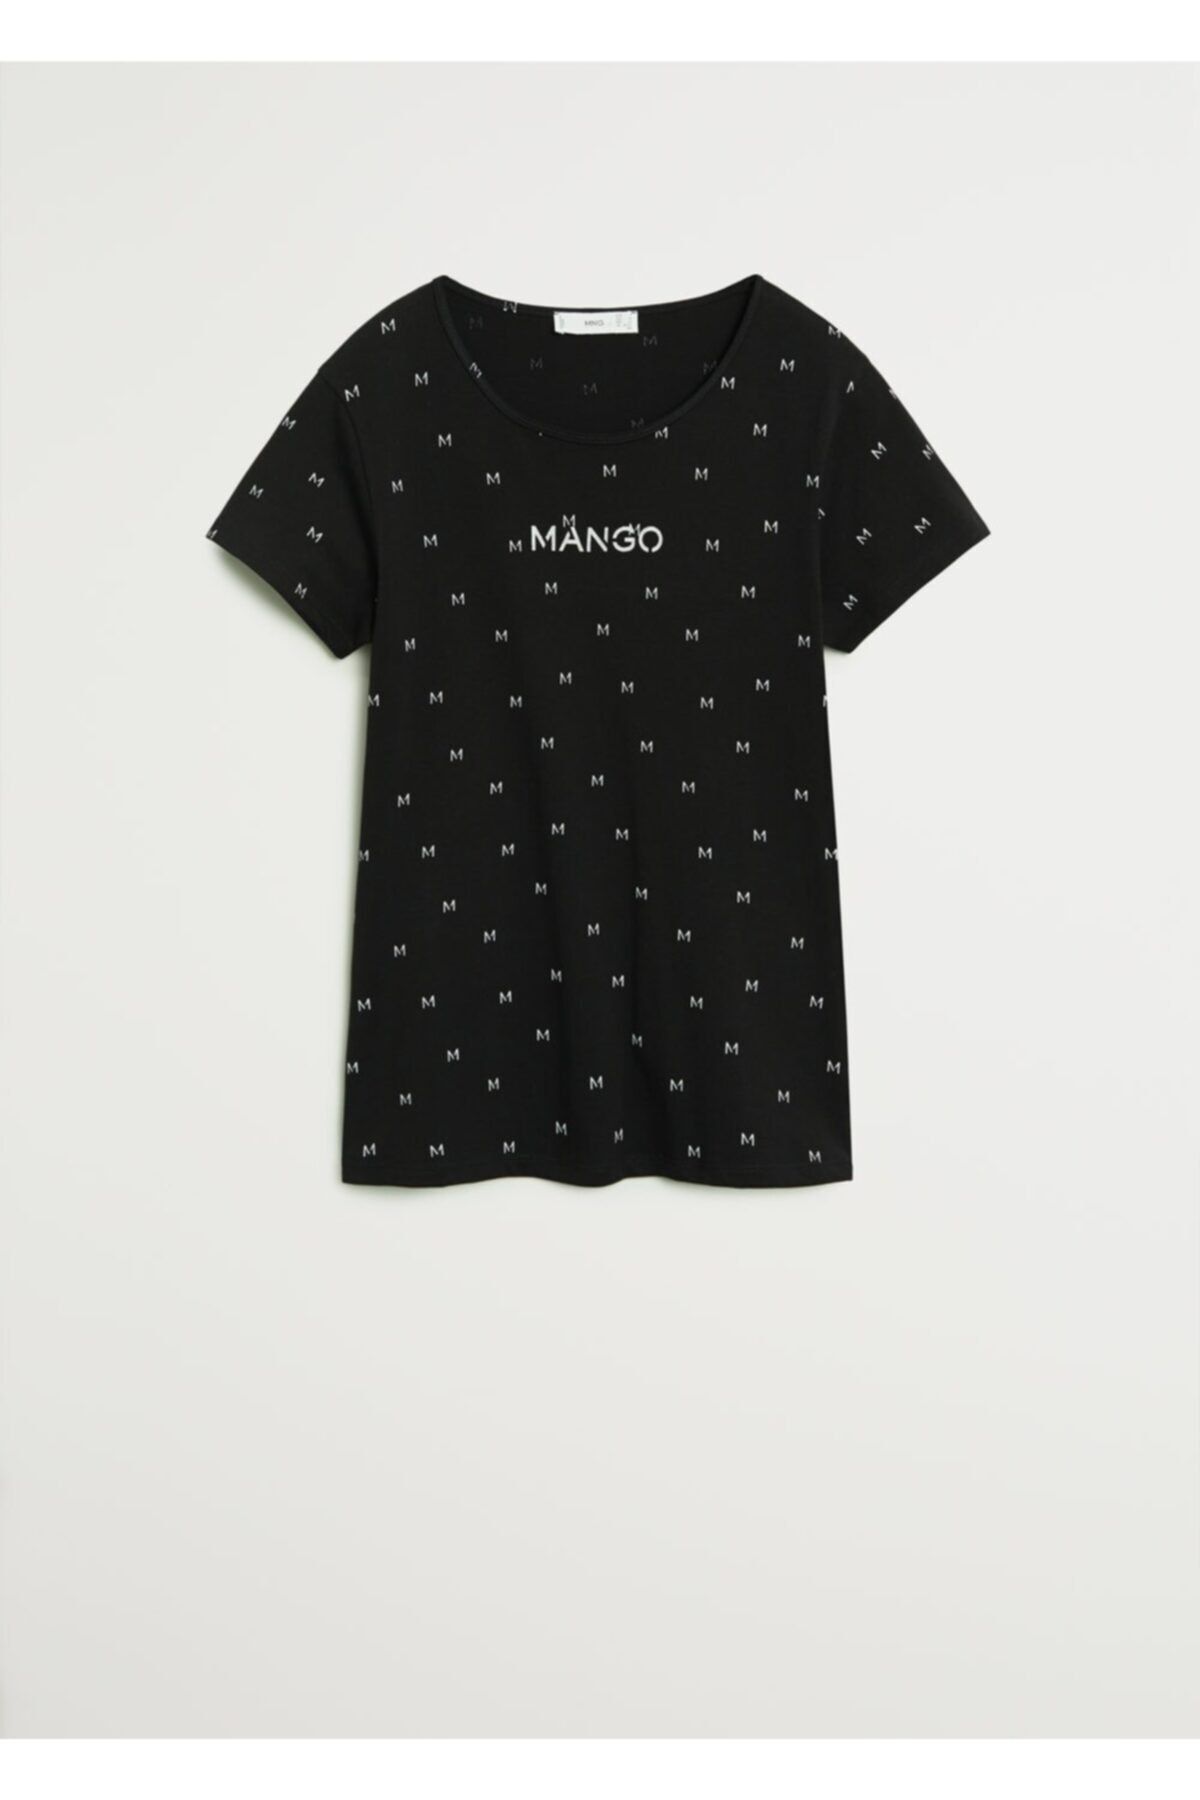 MANGO Kadın Siyah Logo Baskılı Tişört